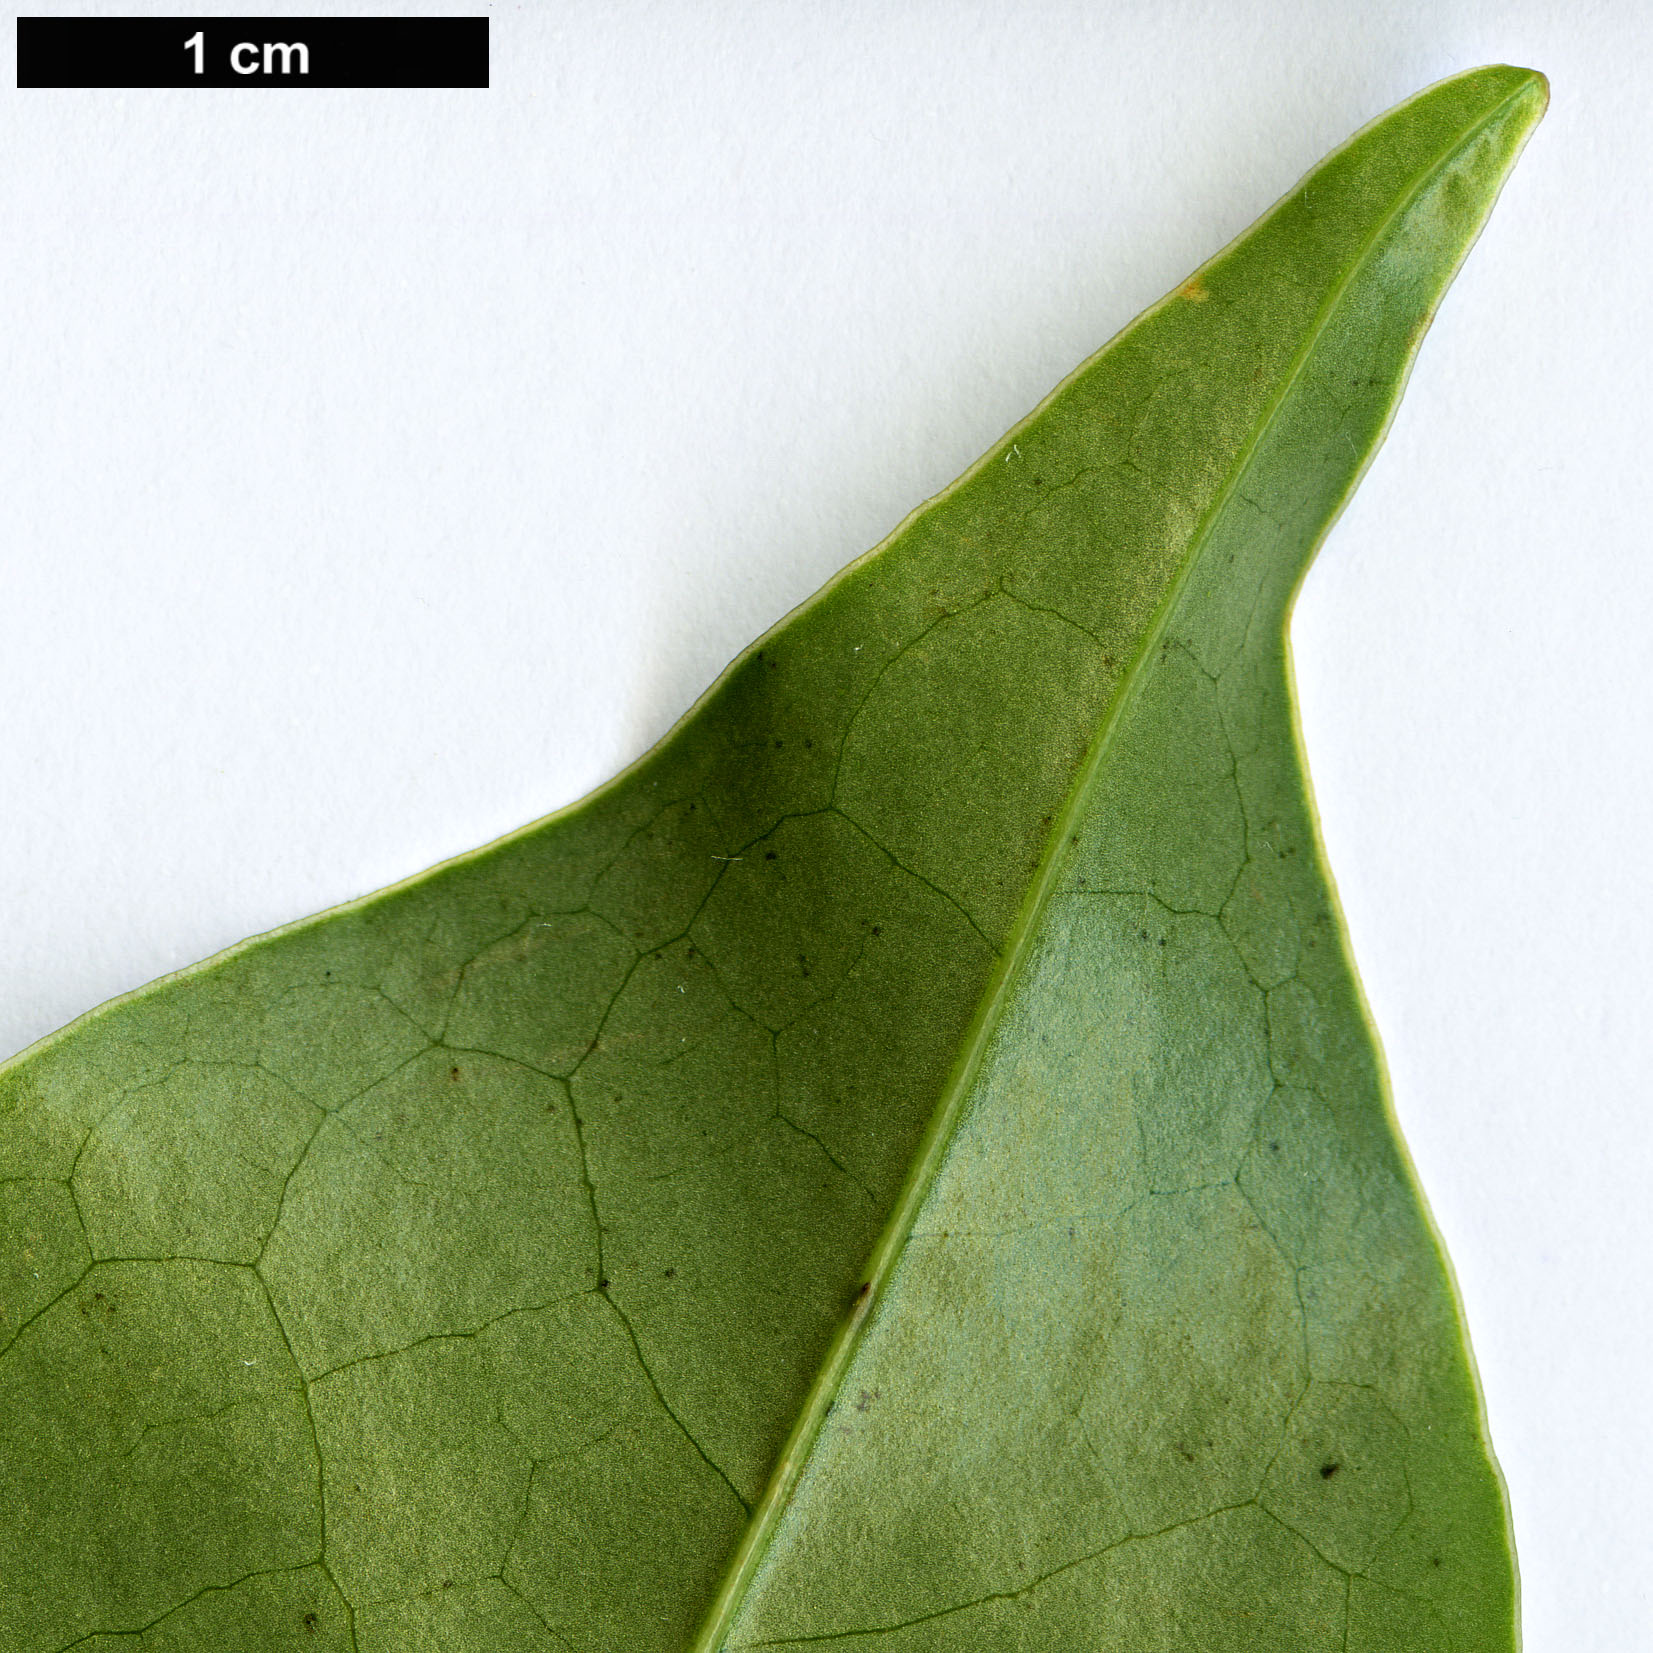 High resolution image: Family: Magnoliaceae - Genus: Magnolia - Taxon: aromatica